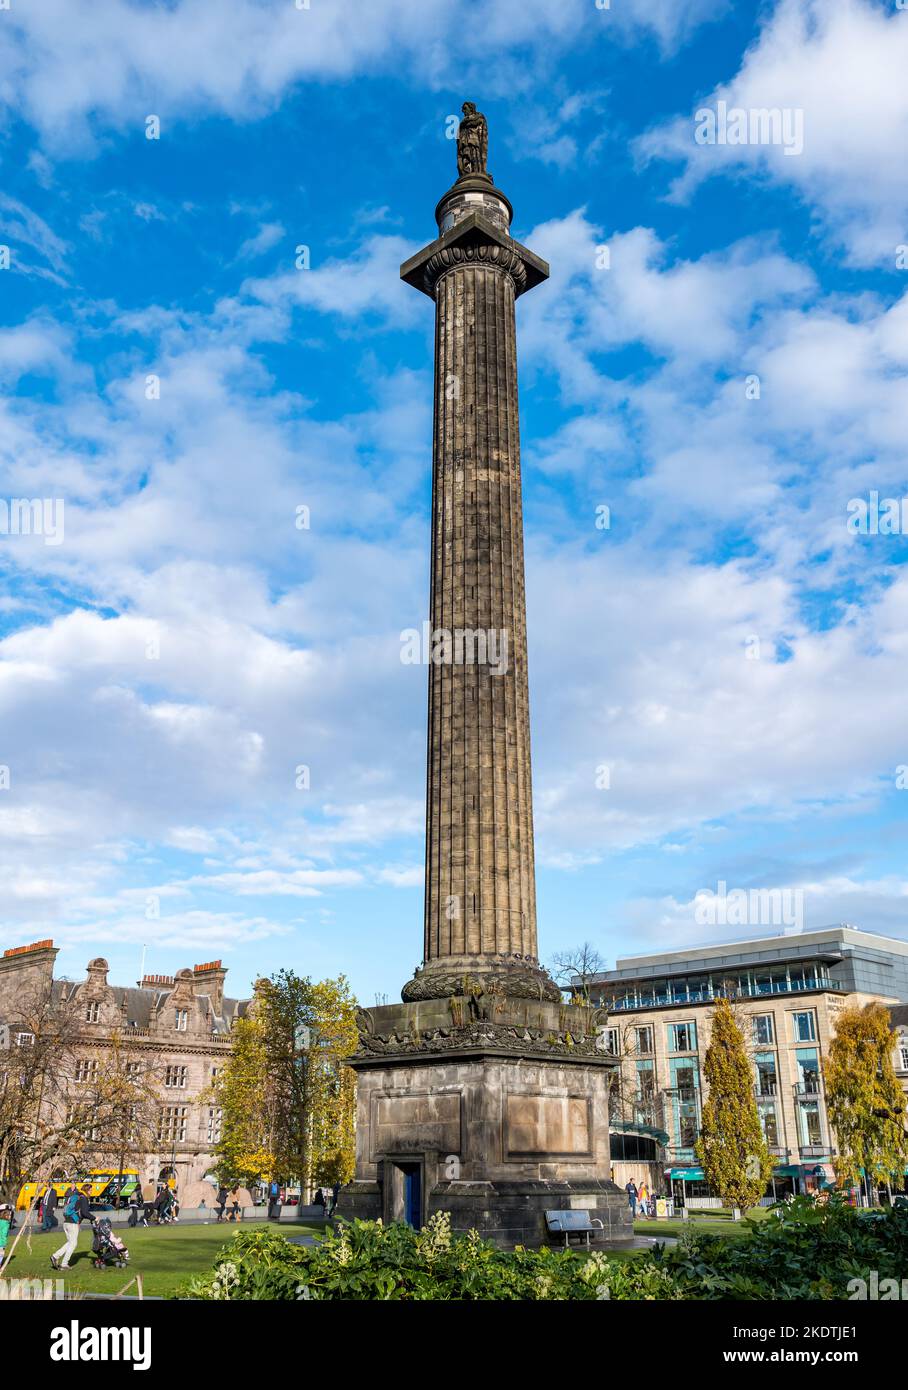 Henry Dundas or Melville monument on tall column against blue sky, St Andrew Square, Edinburgh, Scotland, UK Stock Photo